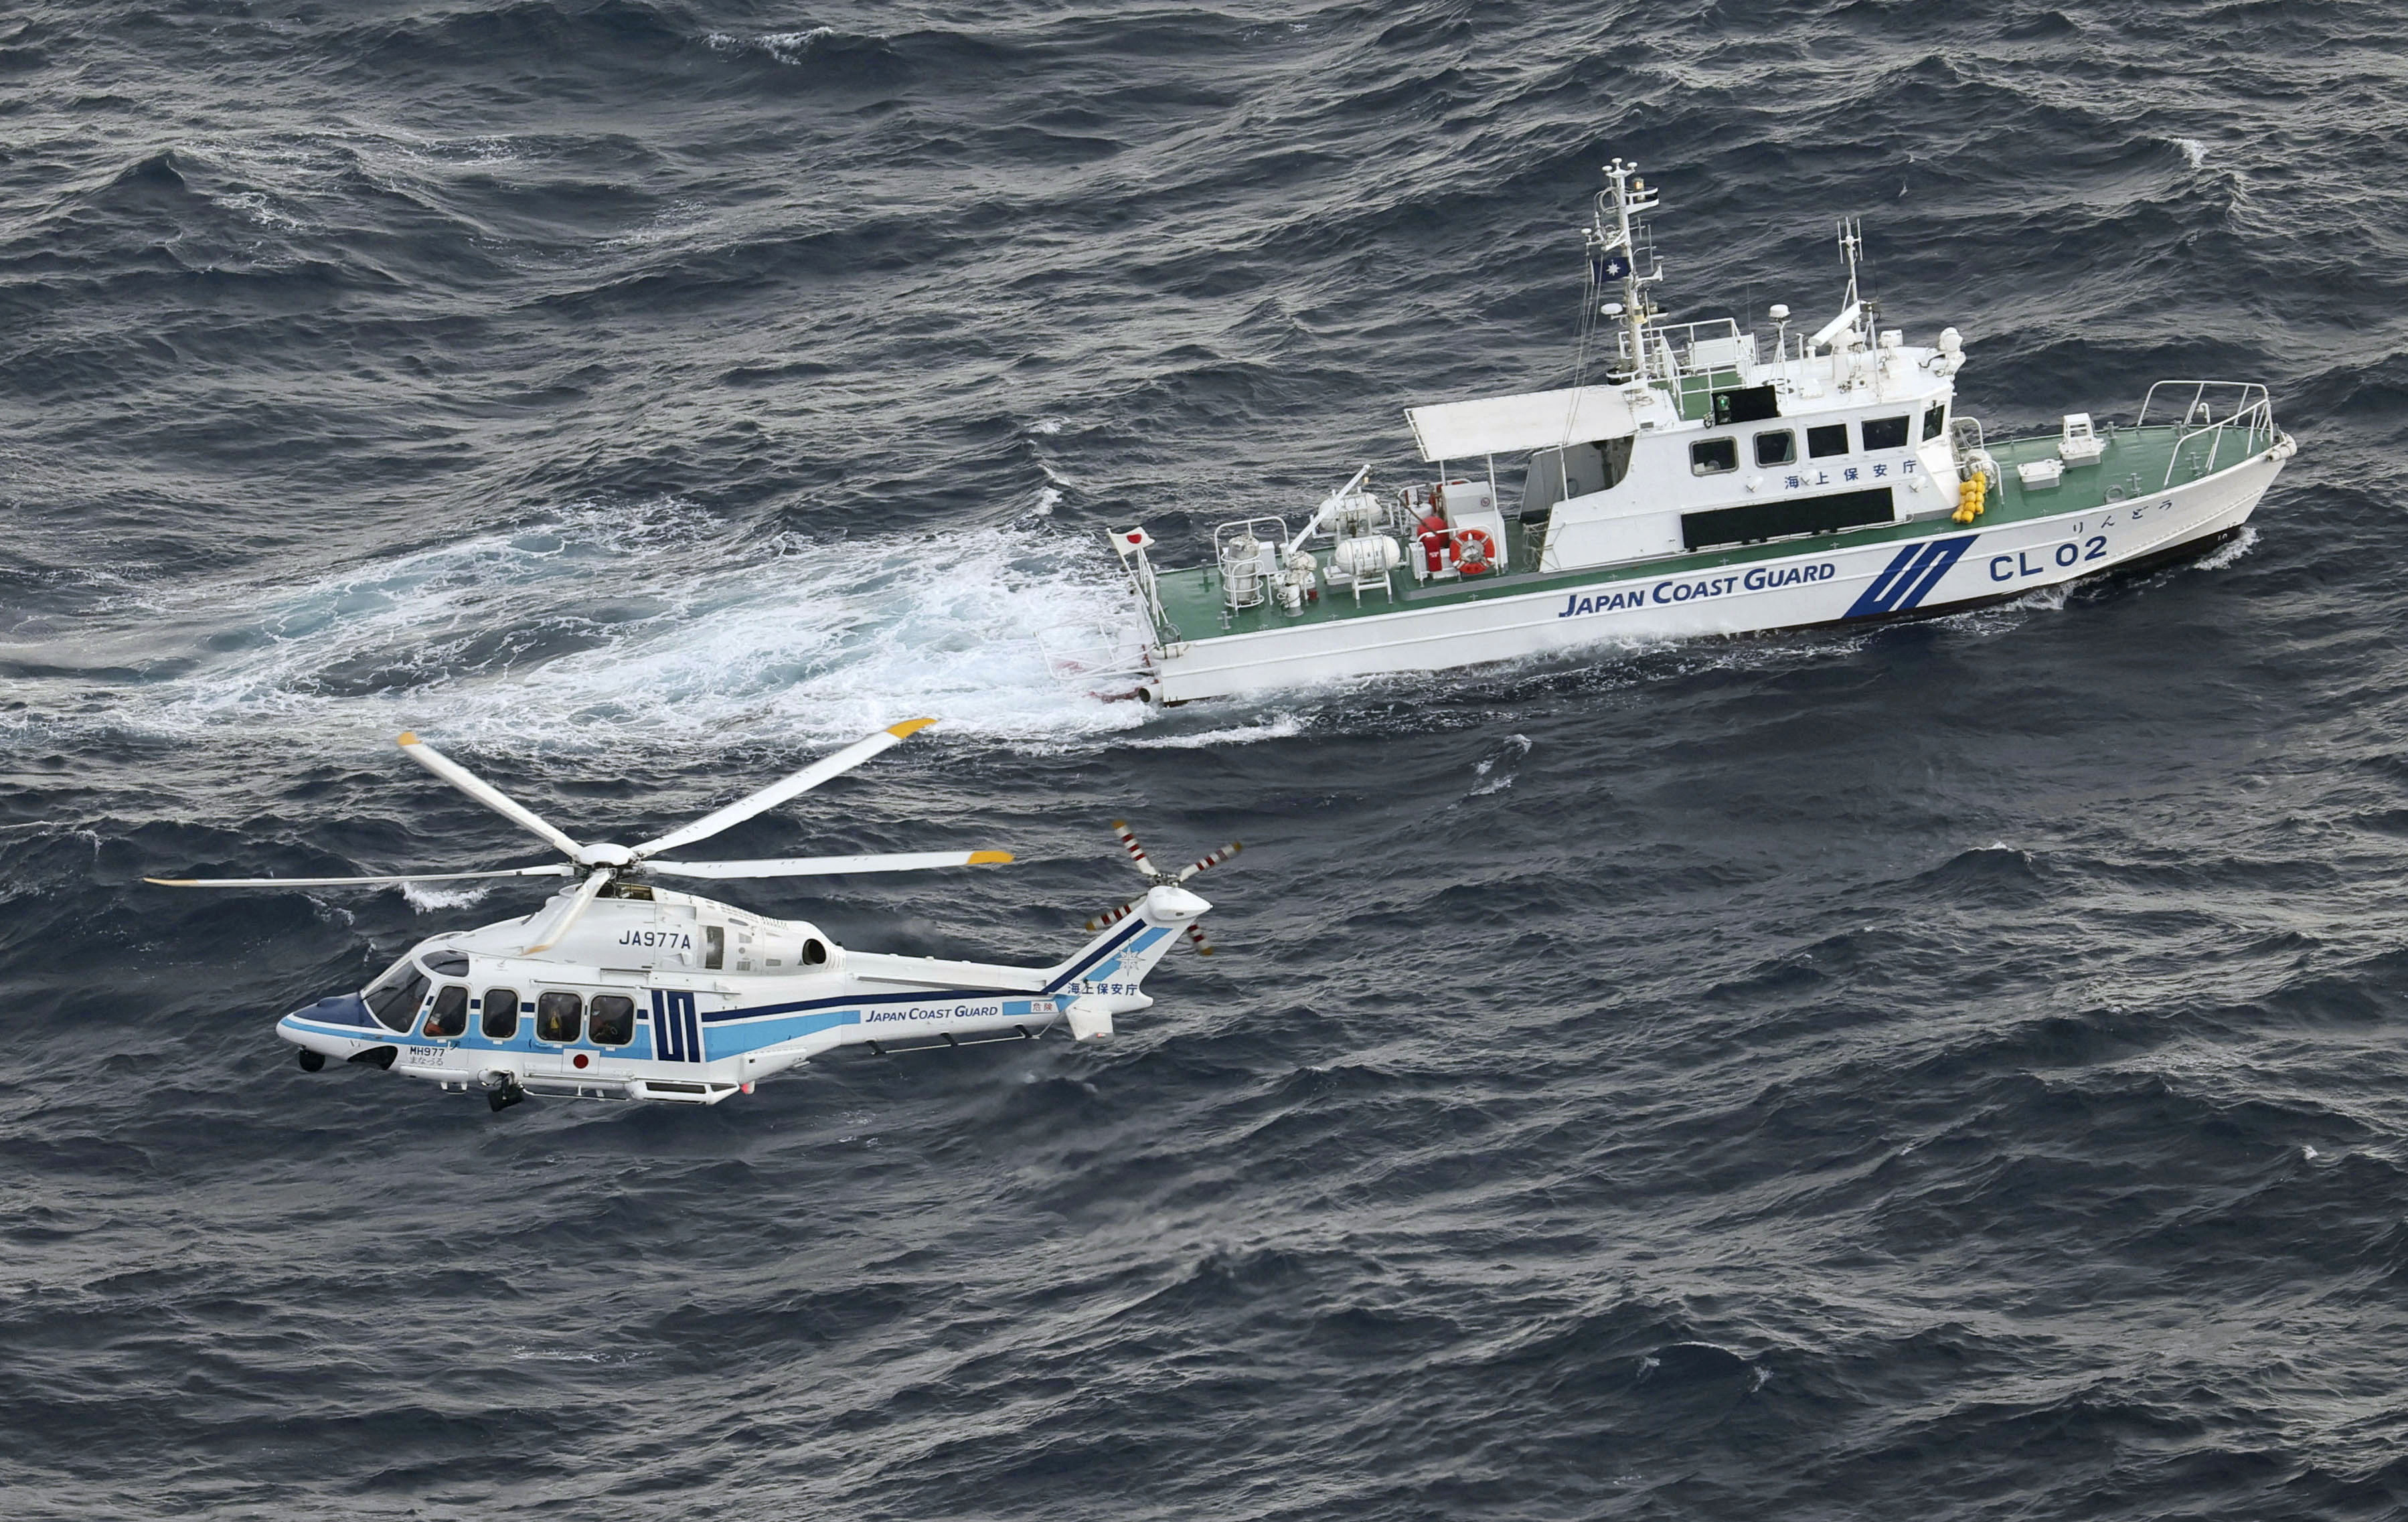 La Guardia Costera japonesa está llevando a cabo una operación de búsqueda y rescate en el lugar donde un avión militar estadounidense V-22 Osprey se estrelló en el mar frente a la isla de Yakushima, Japón.